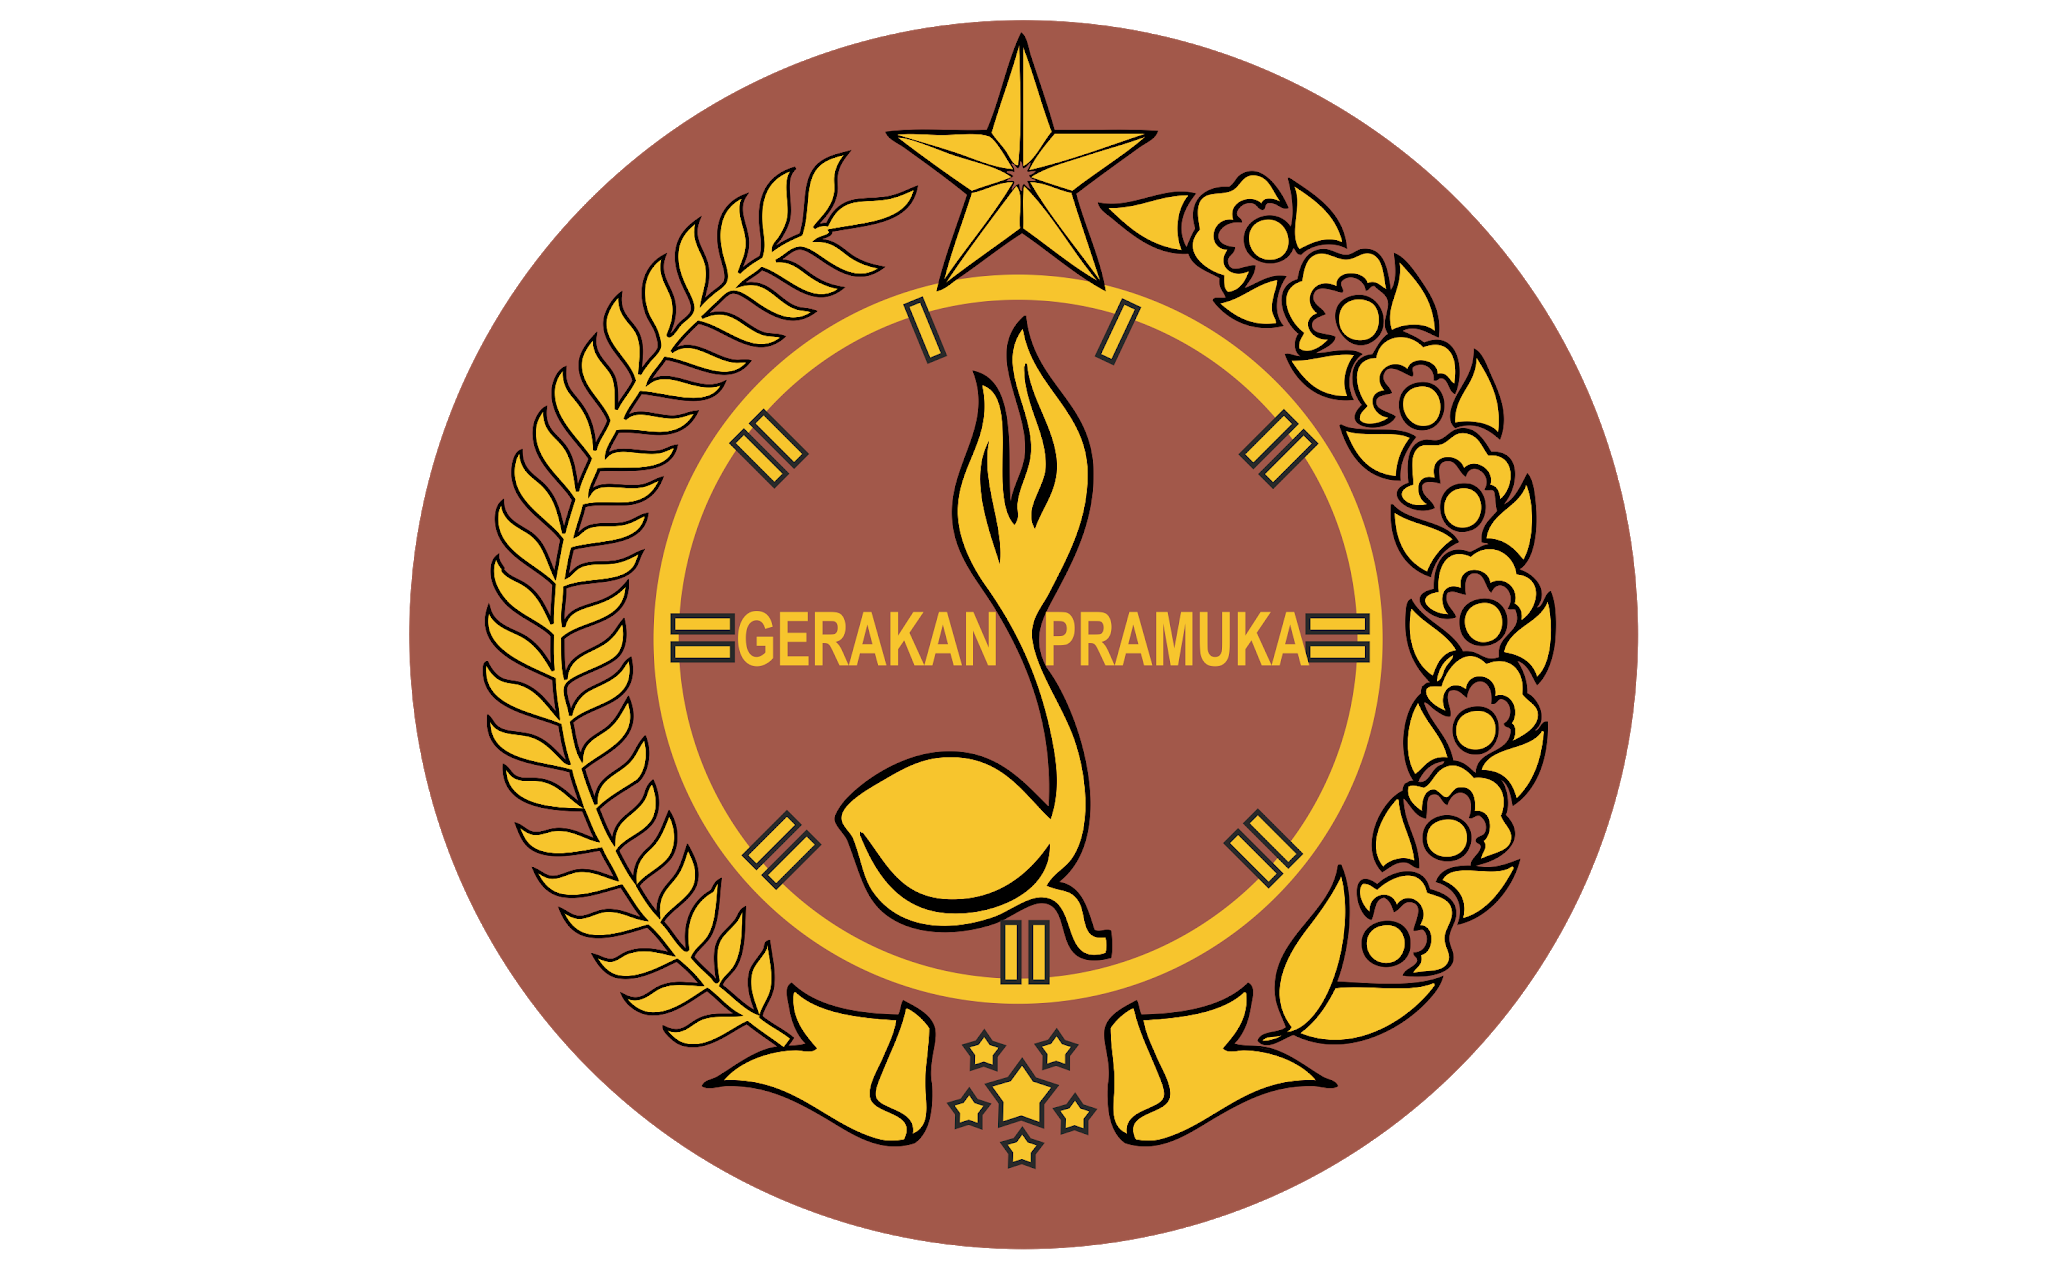 Logo Gerakan Pramuka Free Vector Logos And Design